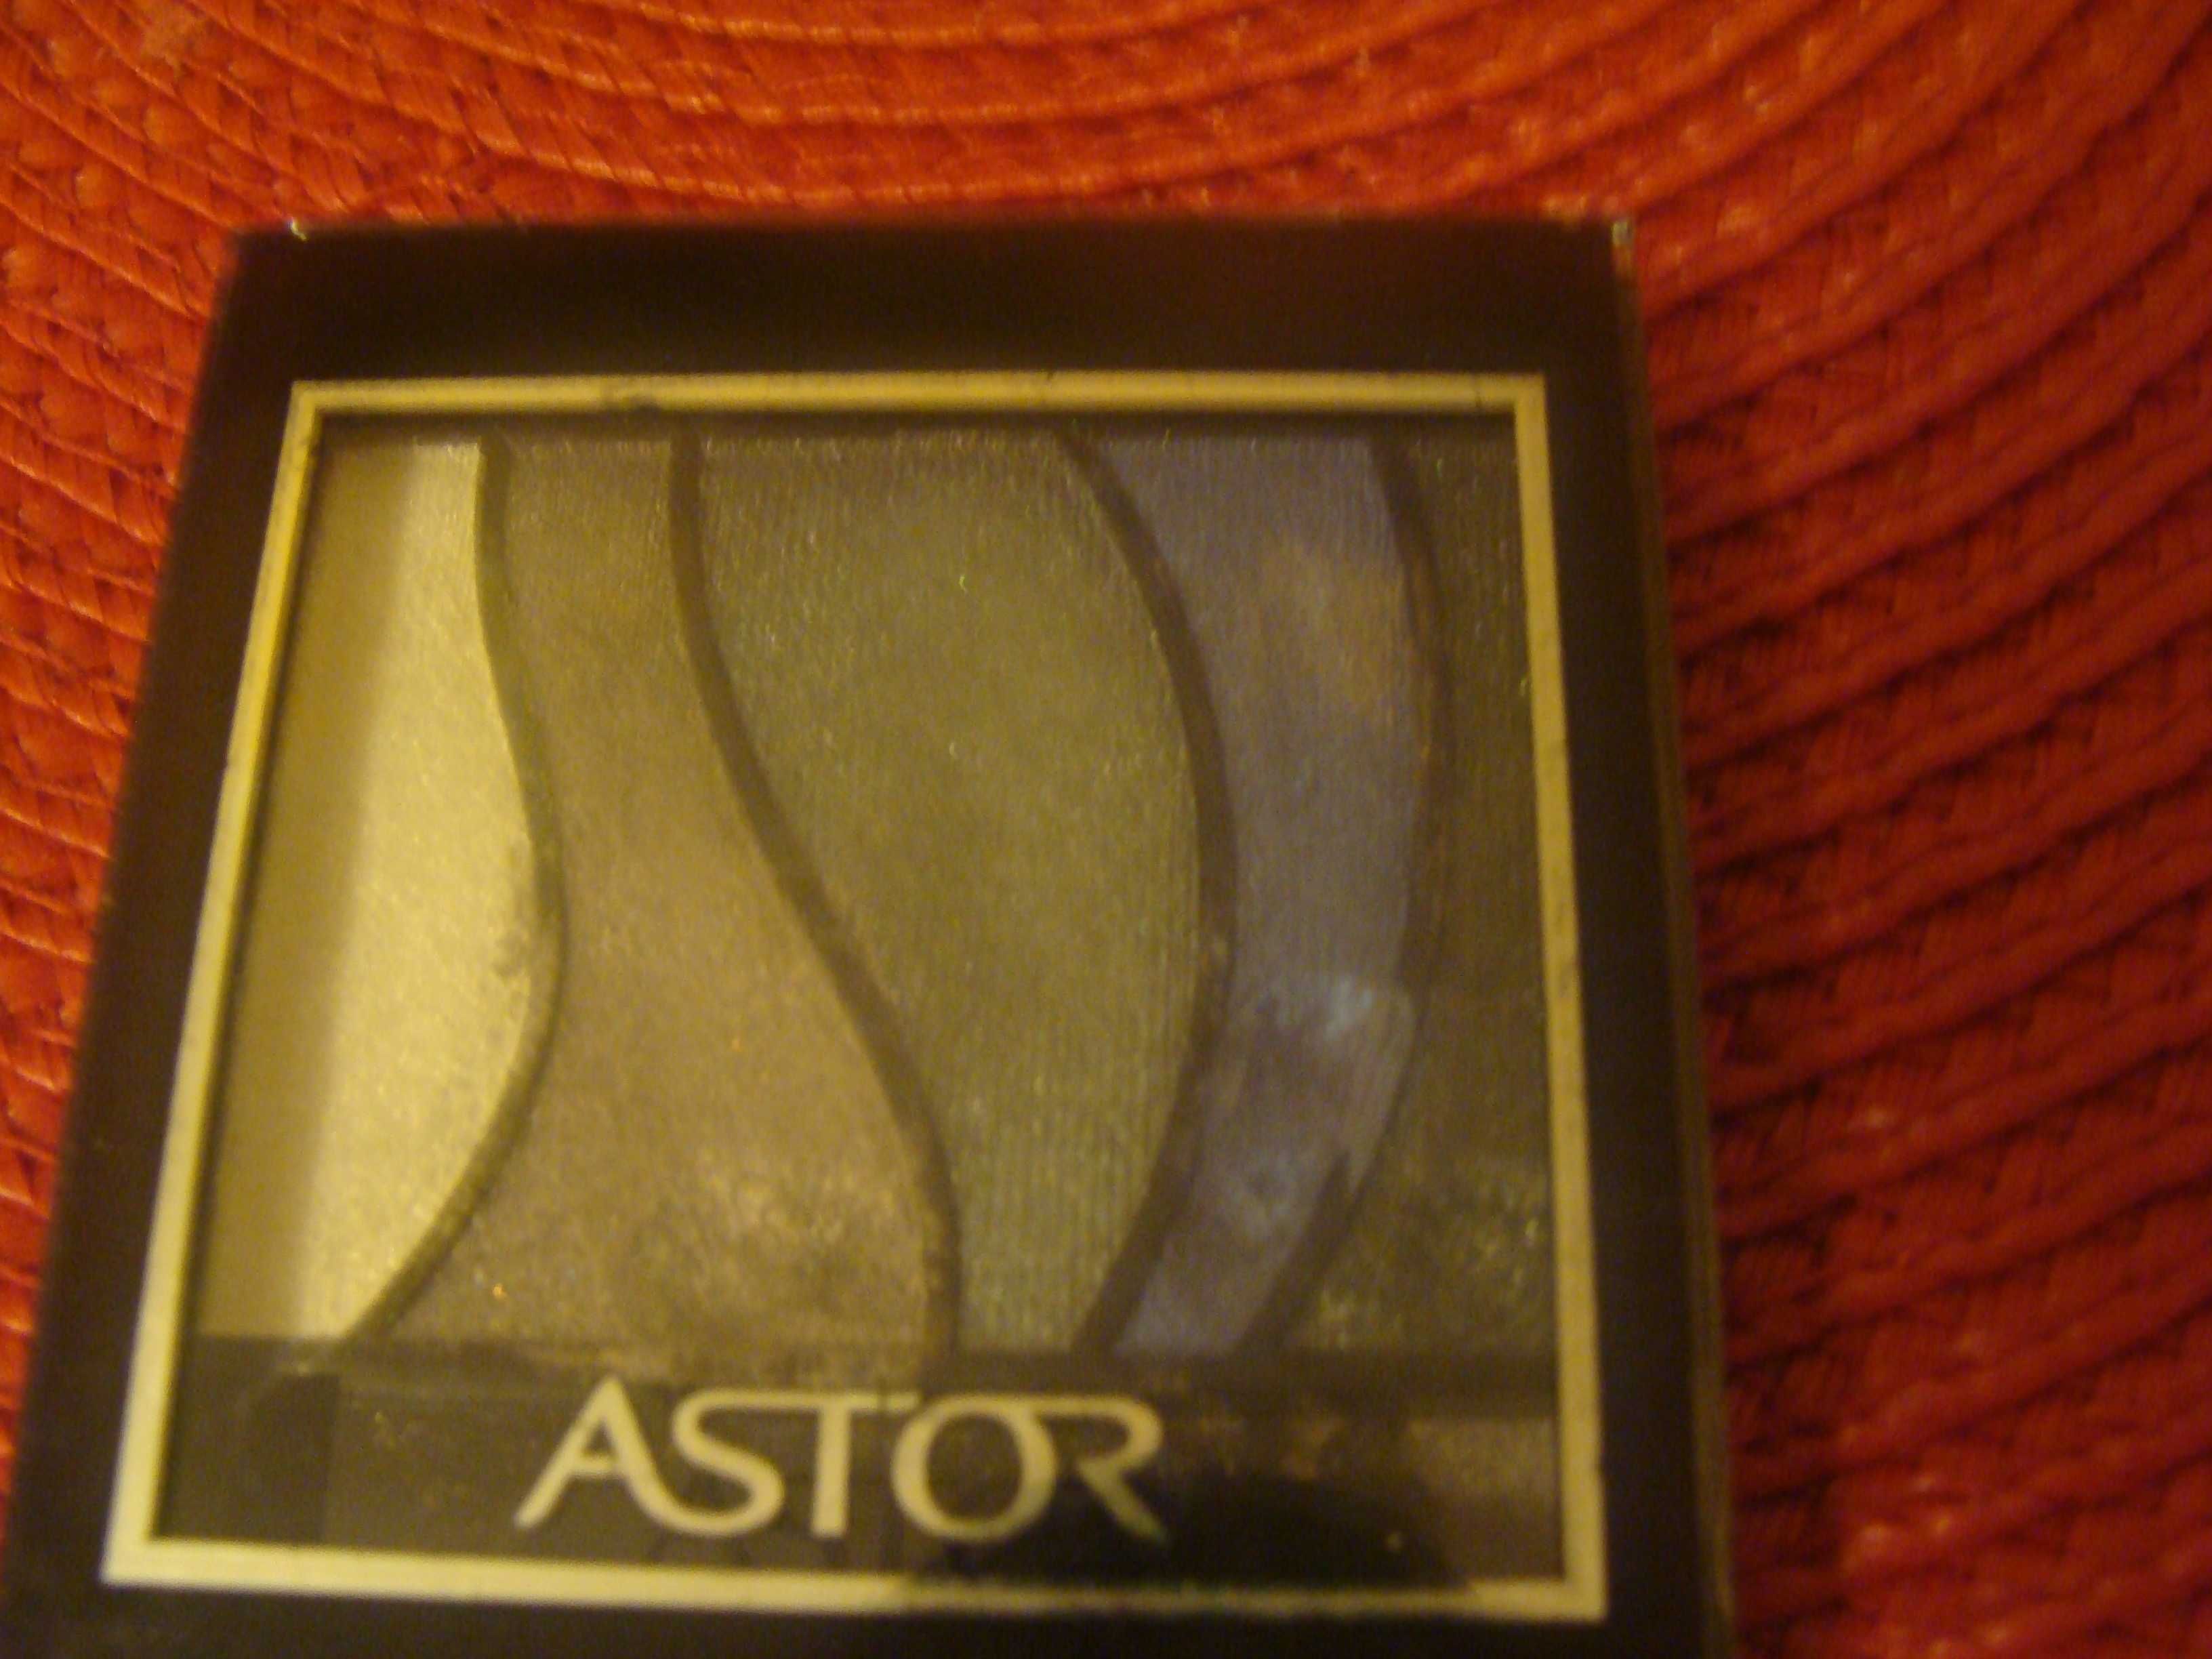 cienie do powiek Astor